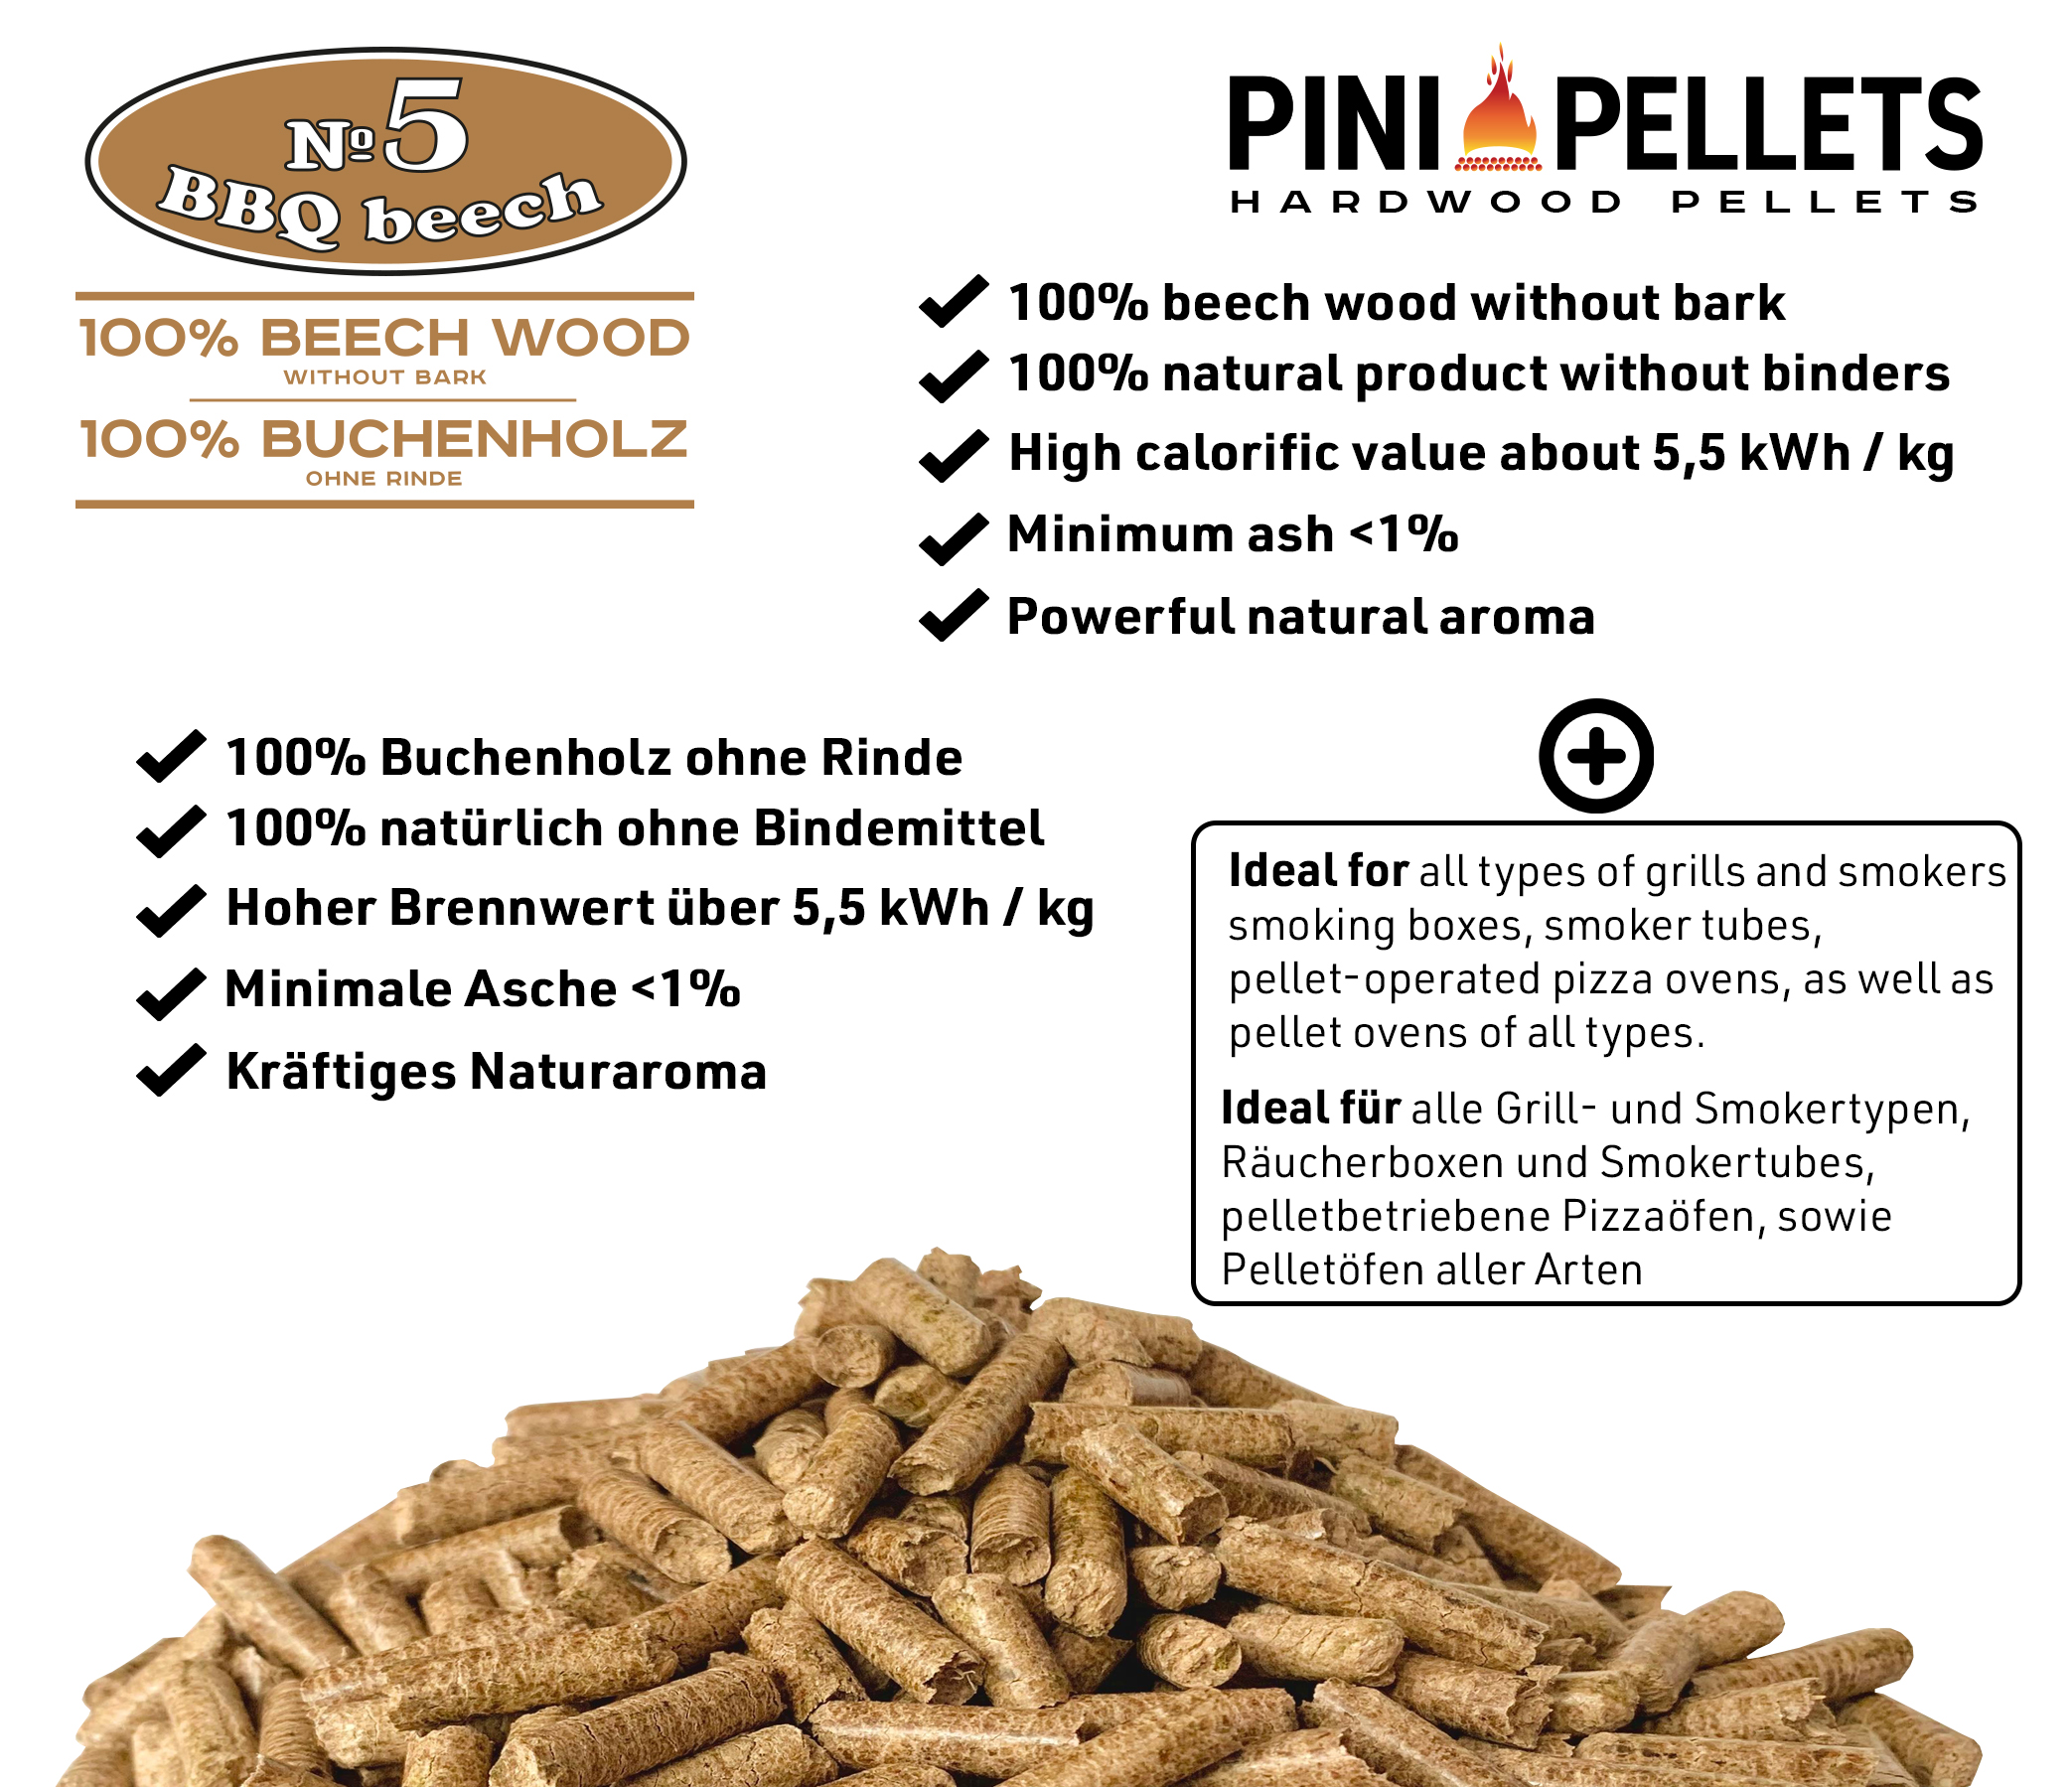 BBQ-Toro Beech Pellets composer de 100% bois de hêtre 15 kg